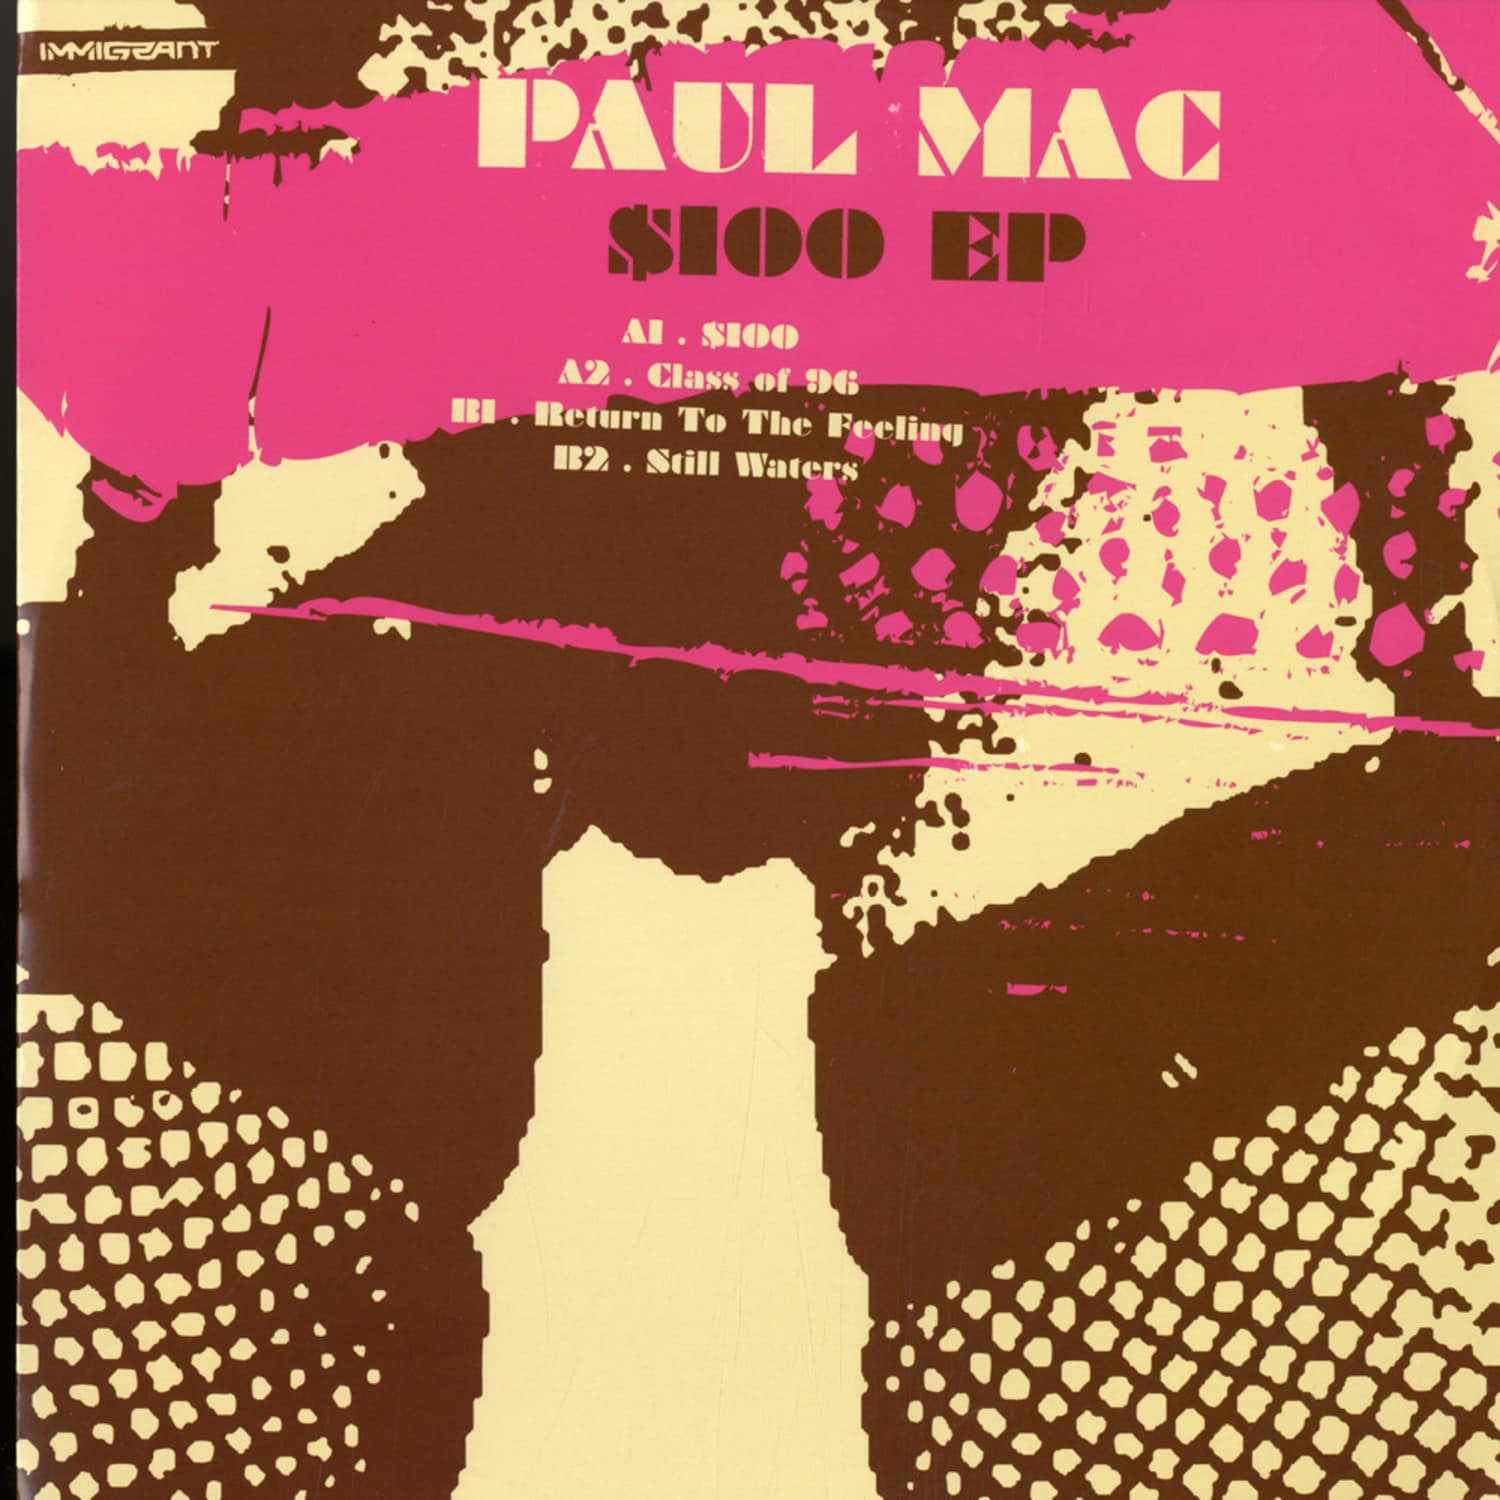 Paul Mac - 100 DOLLAR EP